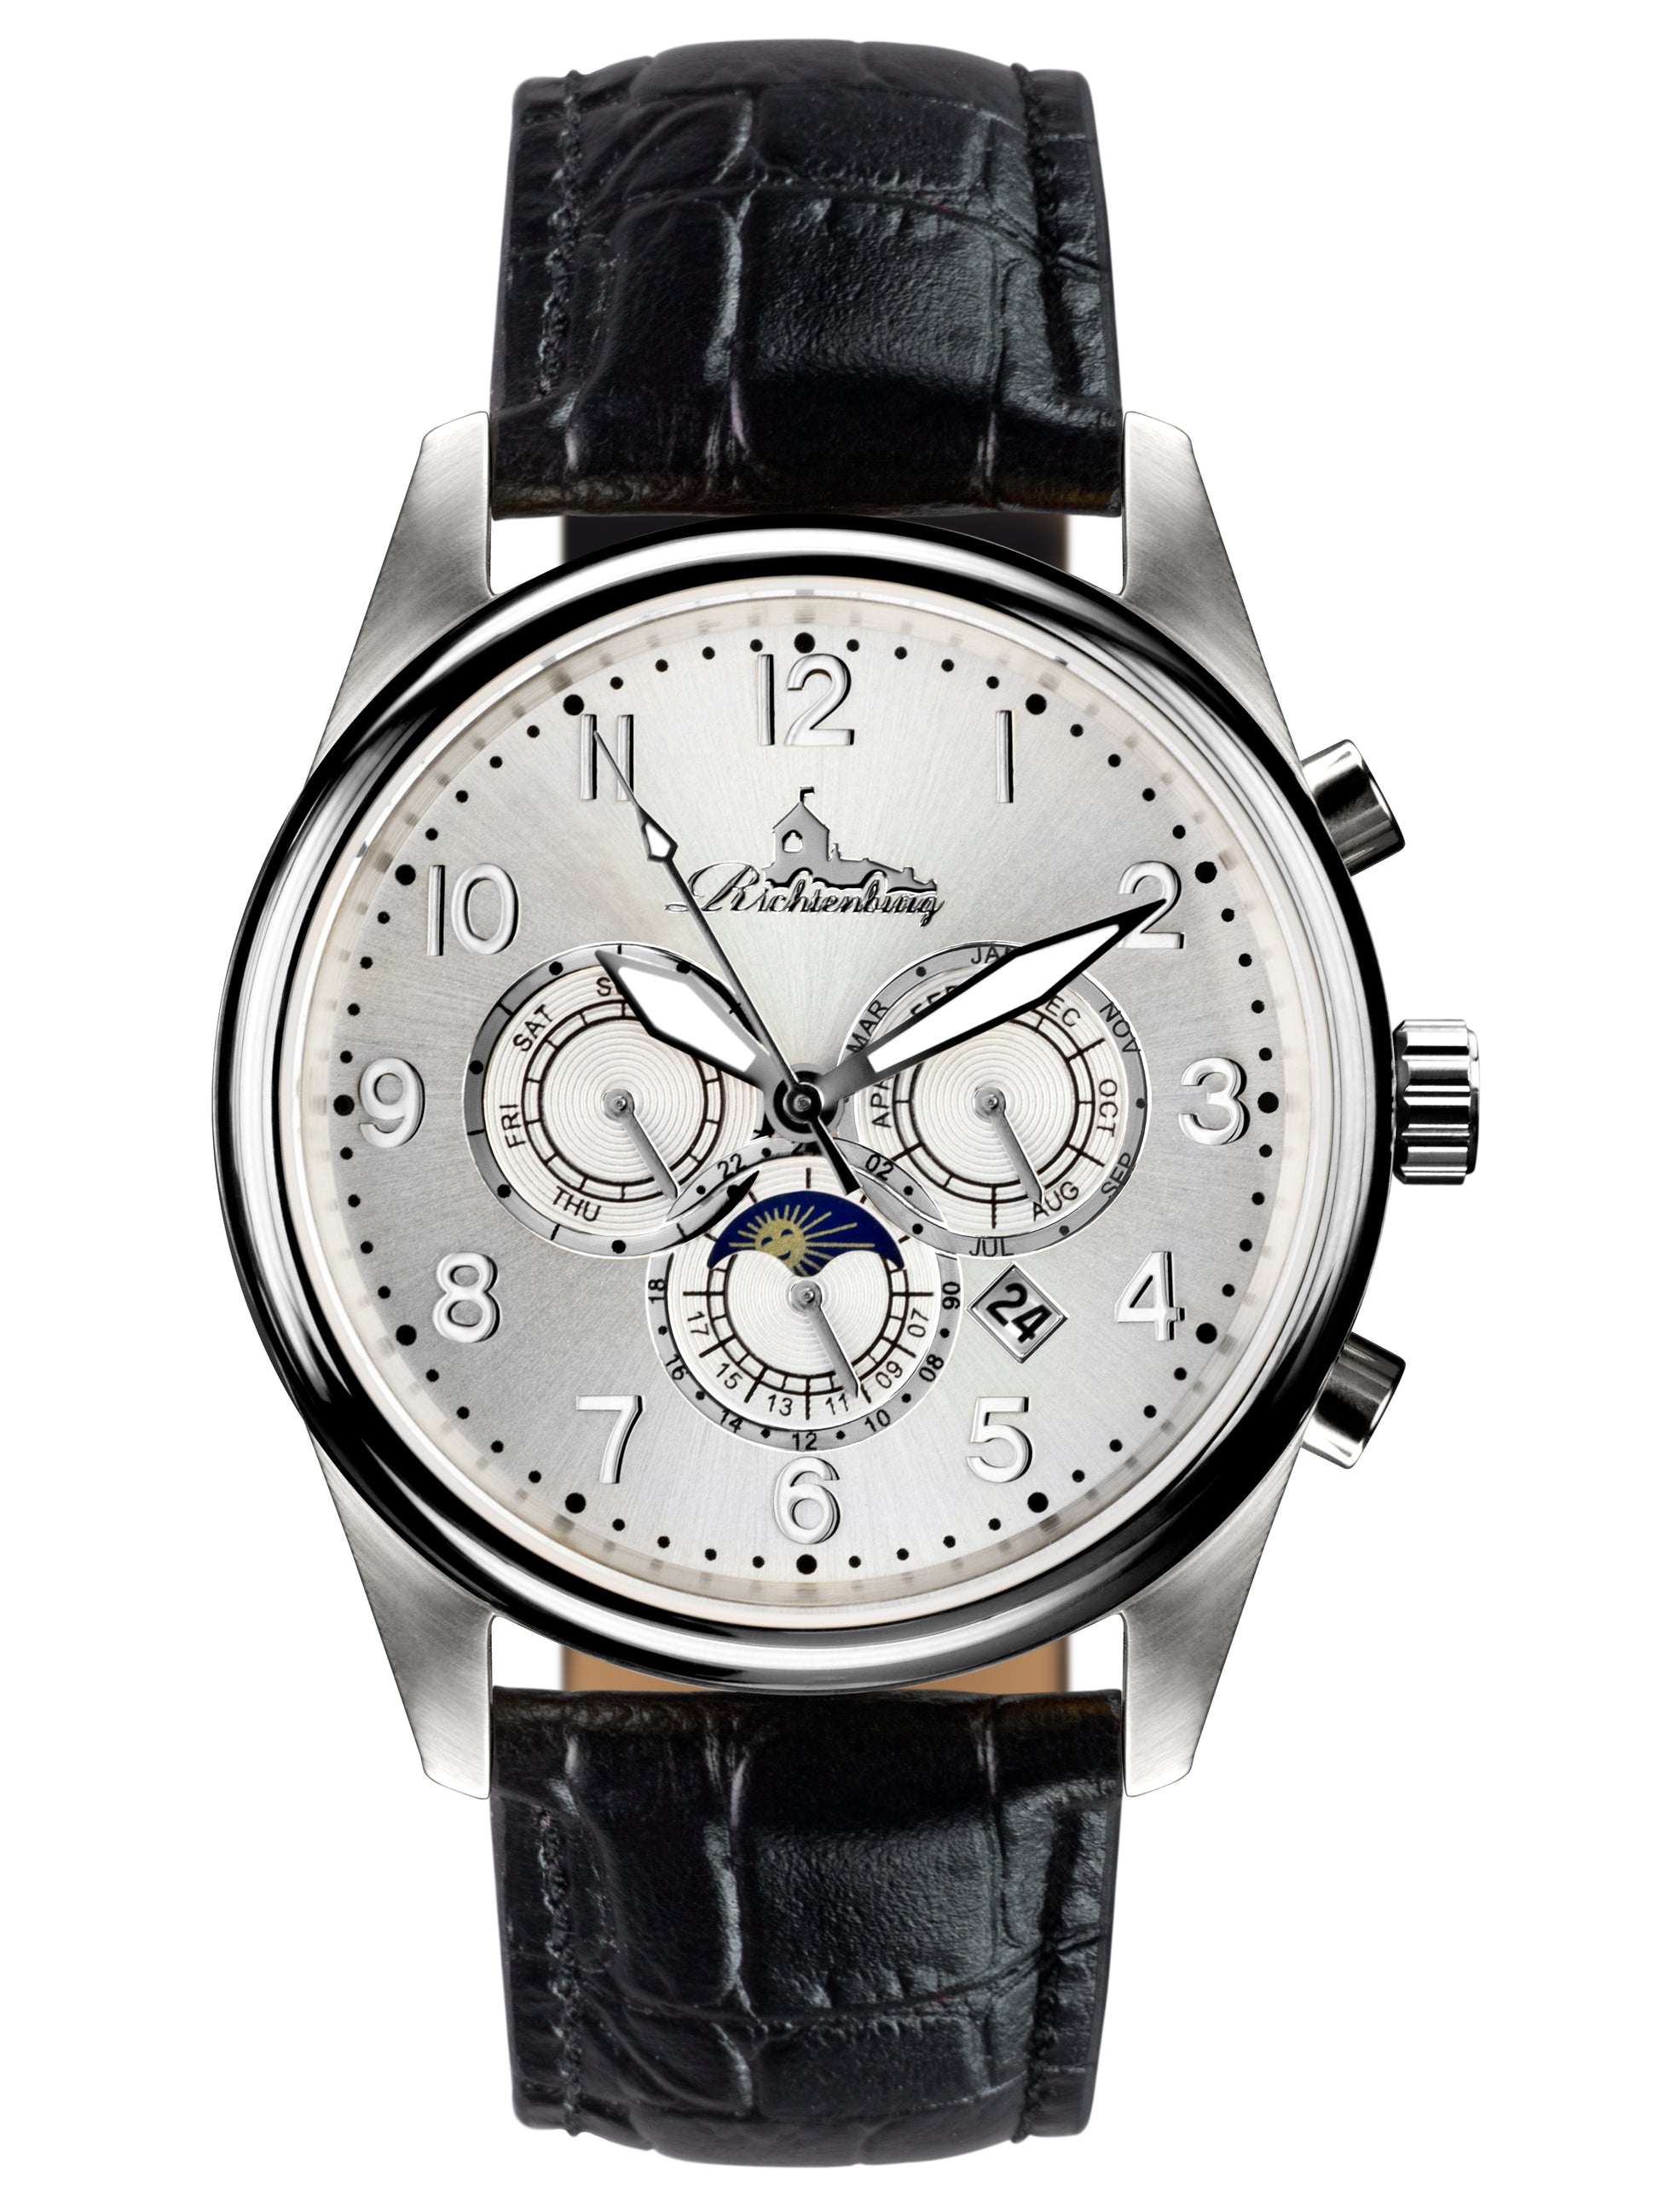 Automatic watches — Athen — Richtenburg — silver